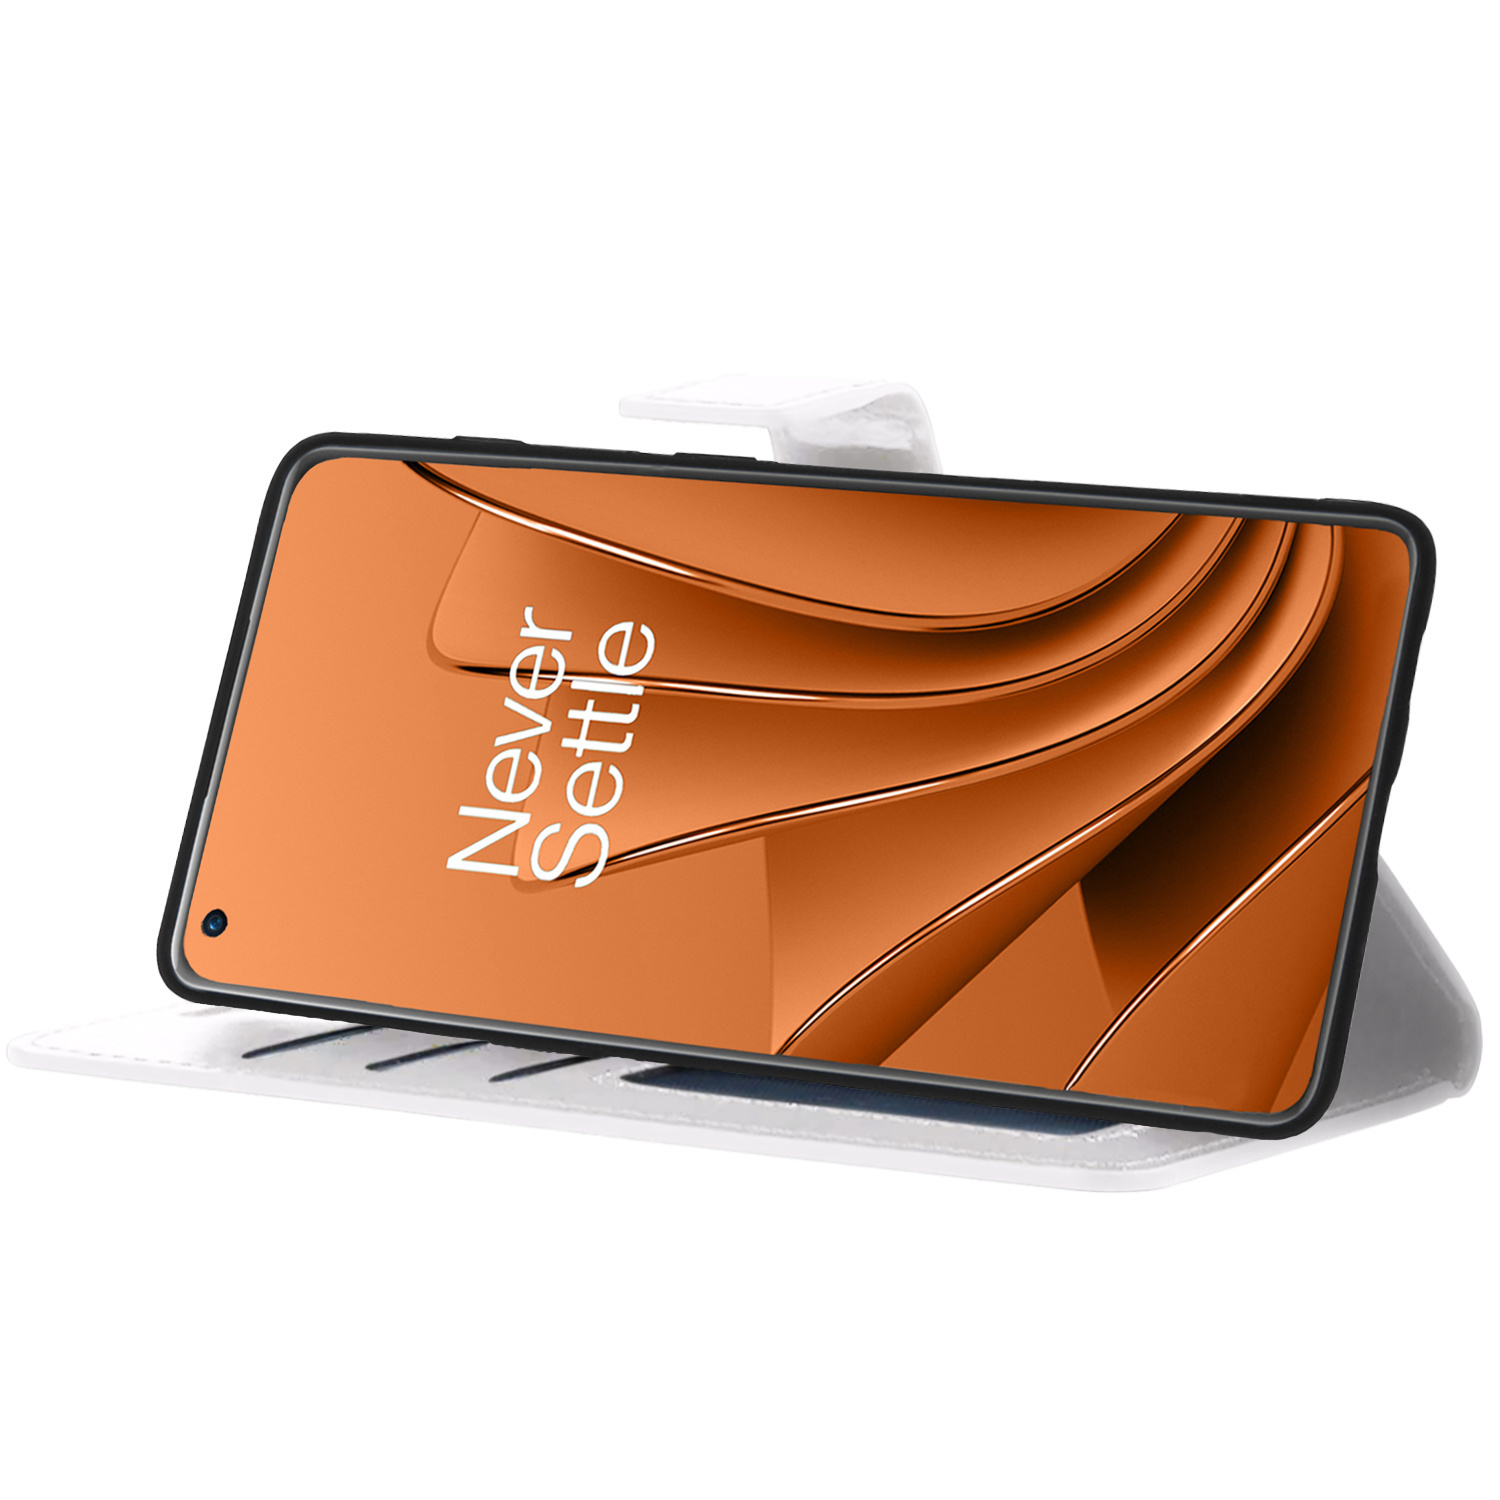 OnePlus 10 Pro Hoesje Bookcase Met 2x Screenprotector - OnePlus 10 Pro Screenprotector 2x - OnePlus 10 Pro Book Case Met 2x Screenprotector Wit